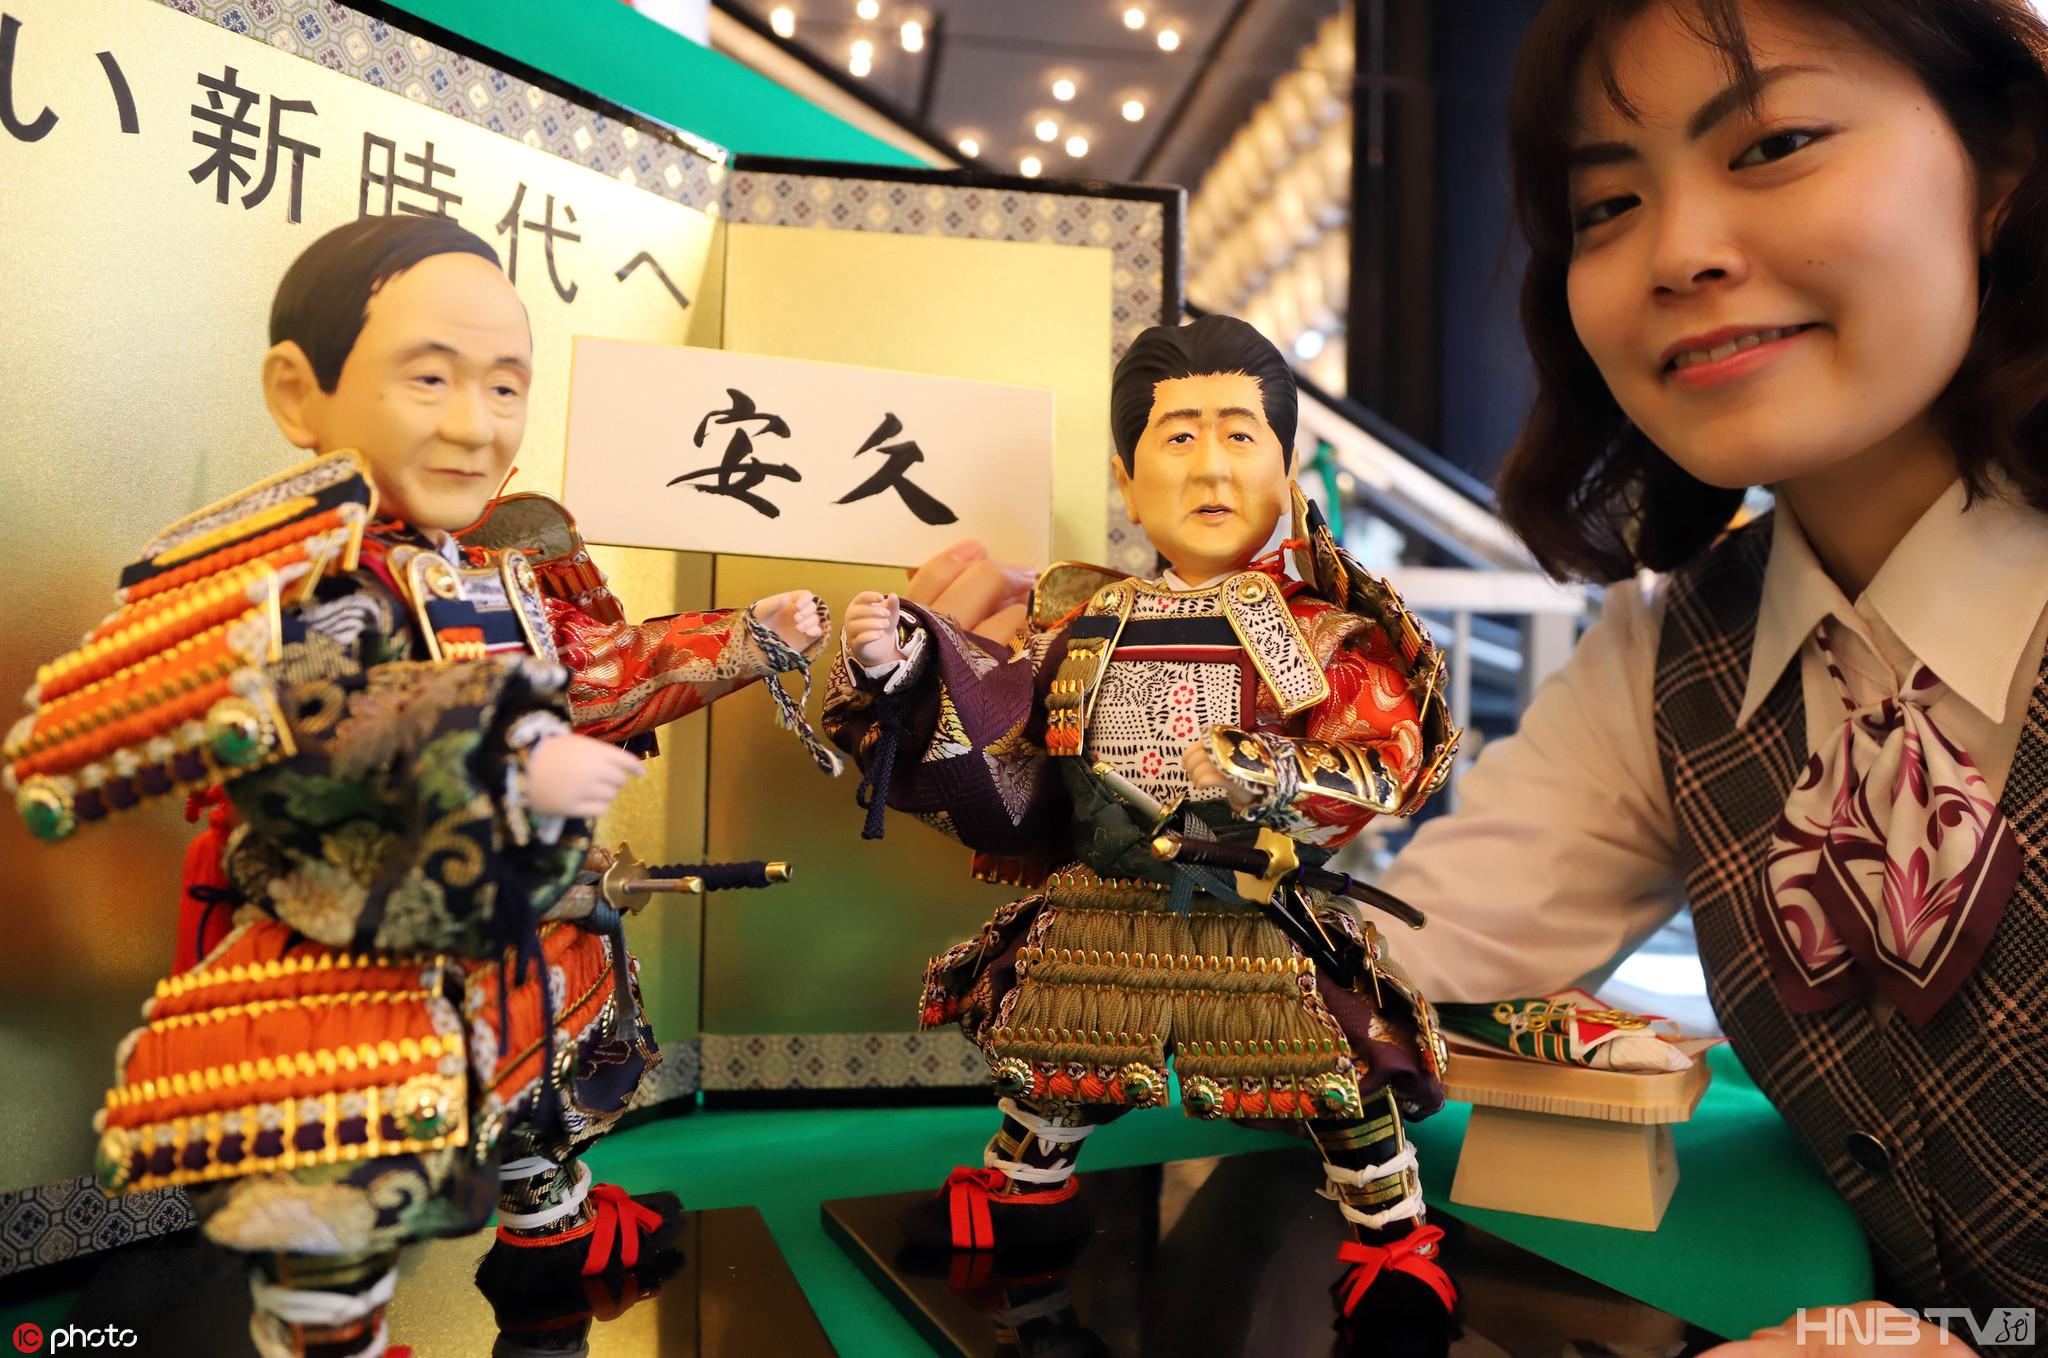 日本商家推出安倍晋三人偶 庆祝儿童日到来